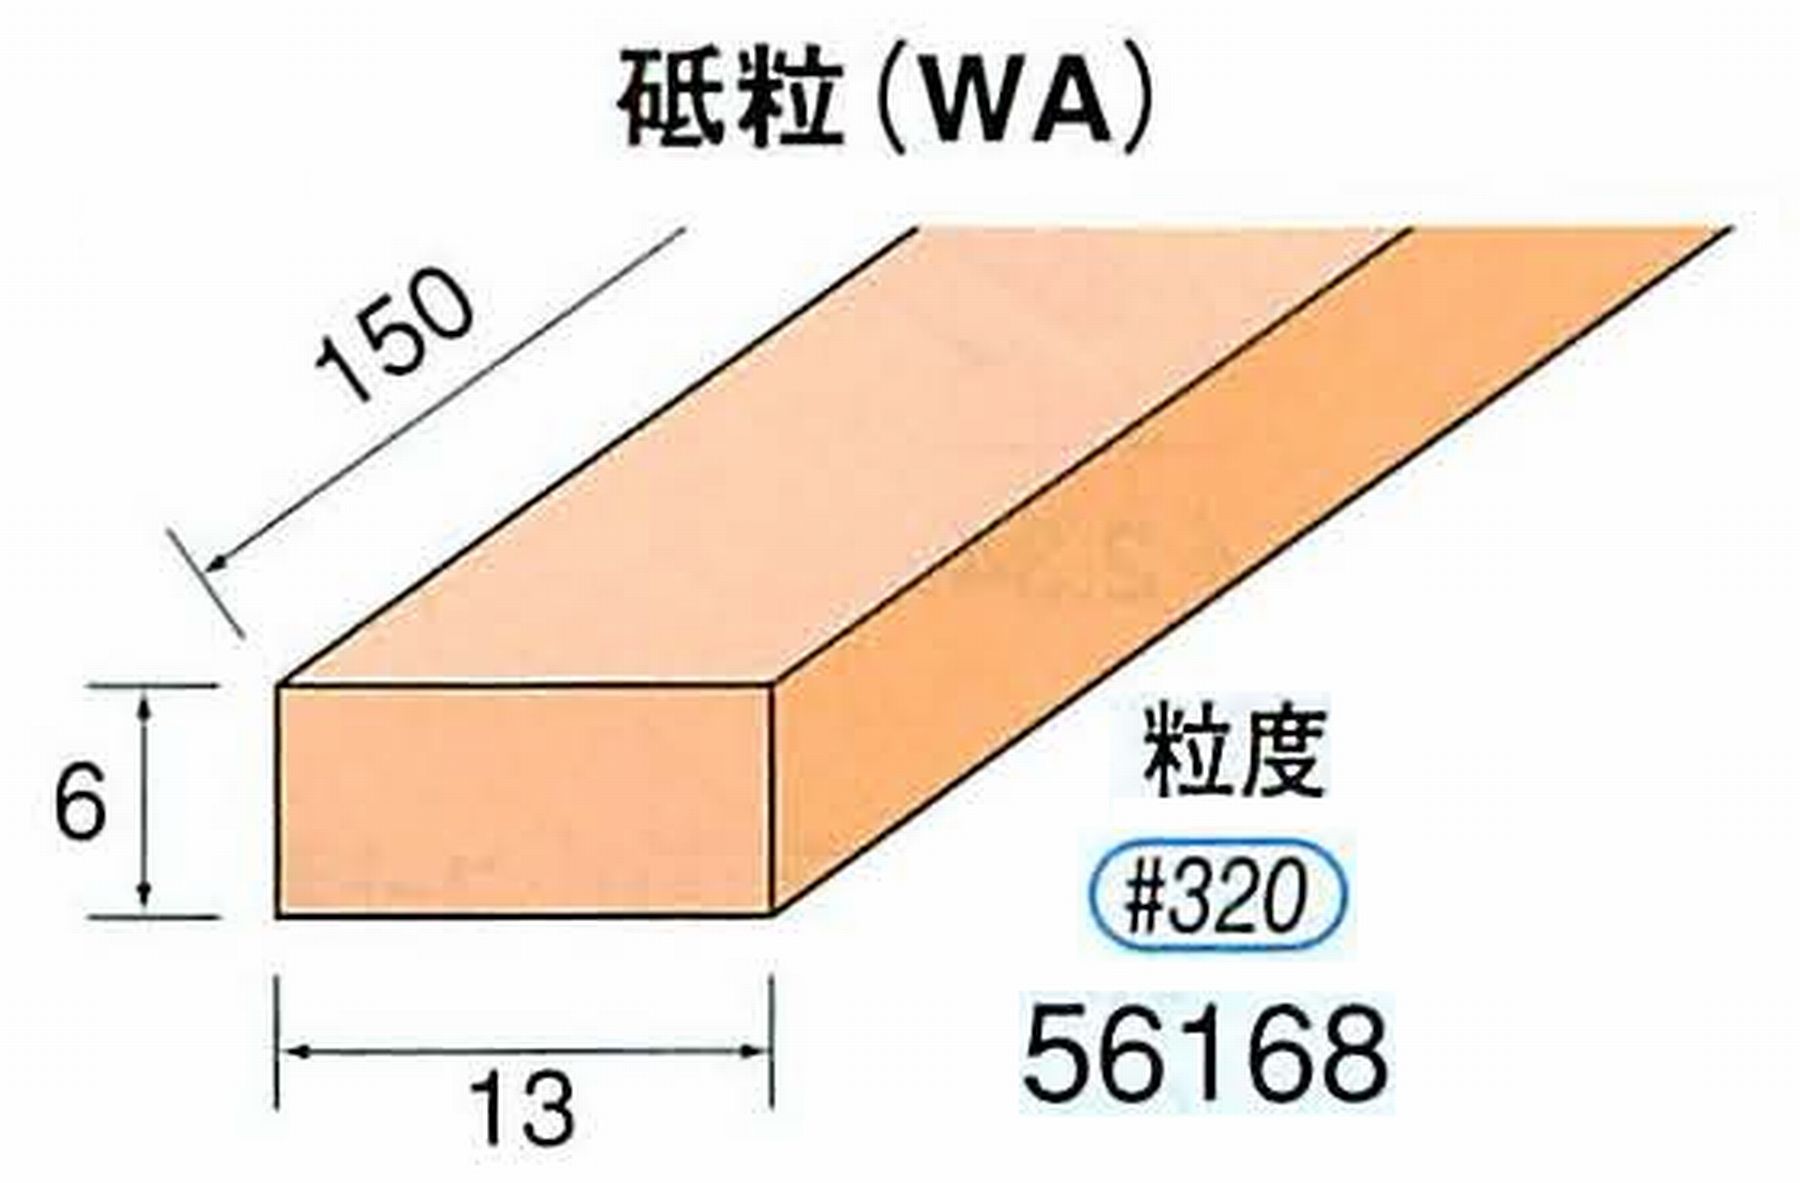 ナカニシ/NAKANISHI スティック砥石 スタンダードシリーズ 砥粒(WA) 56168